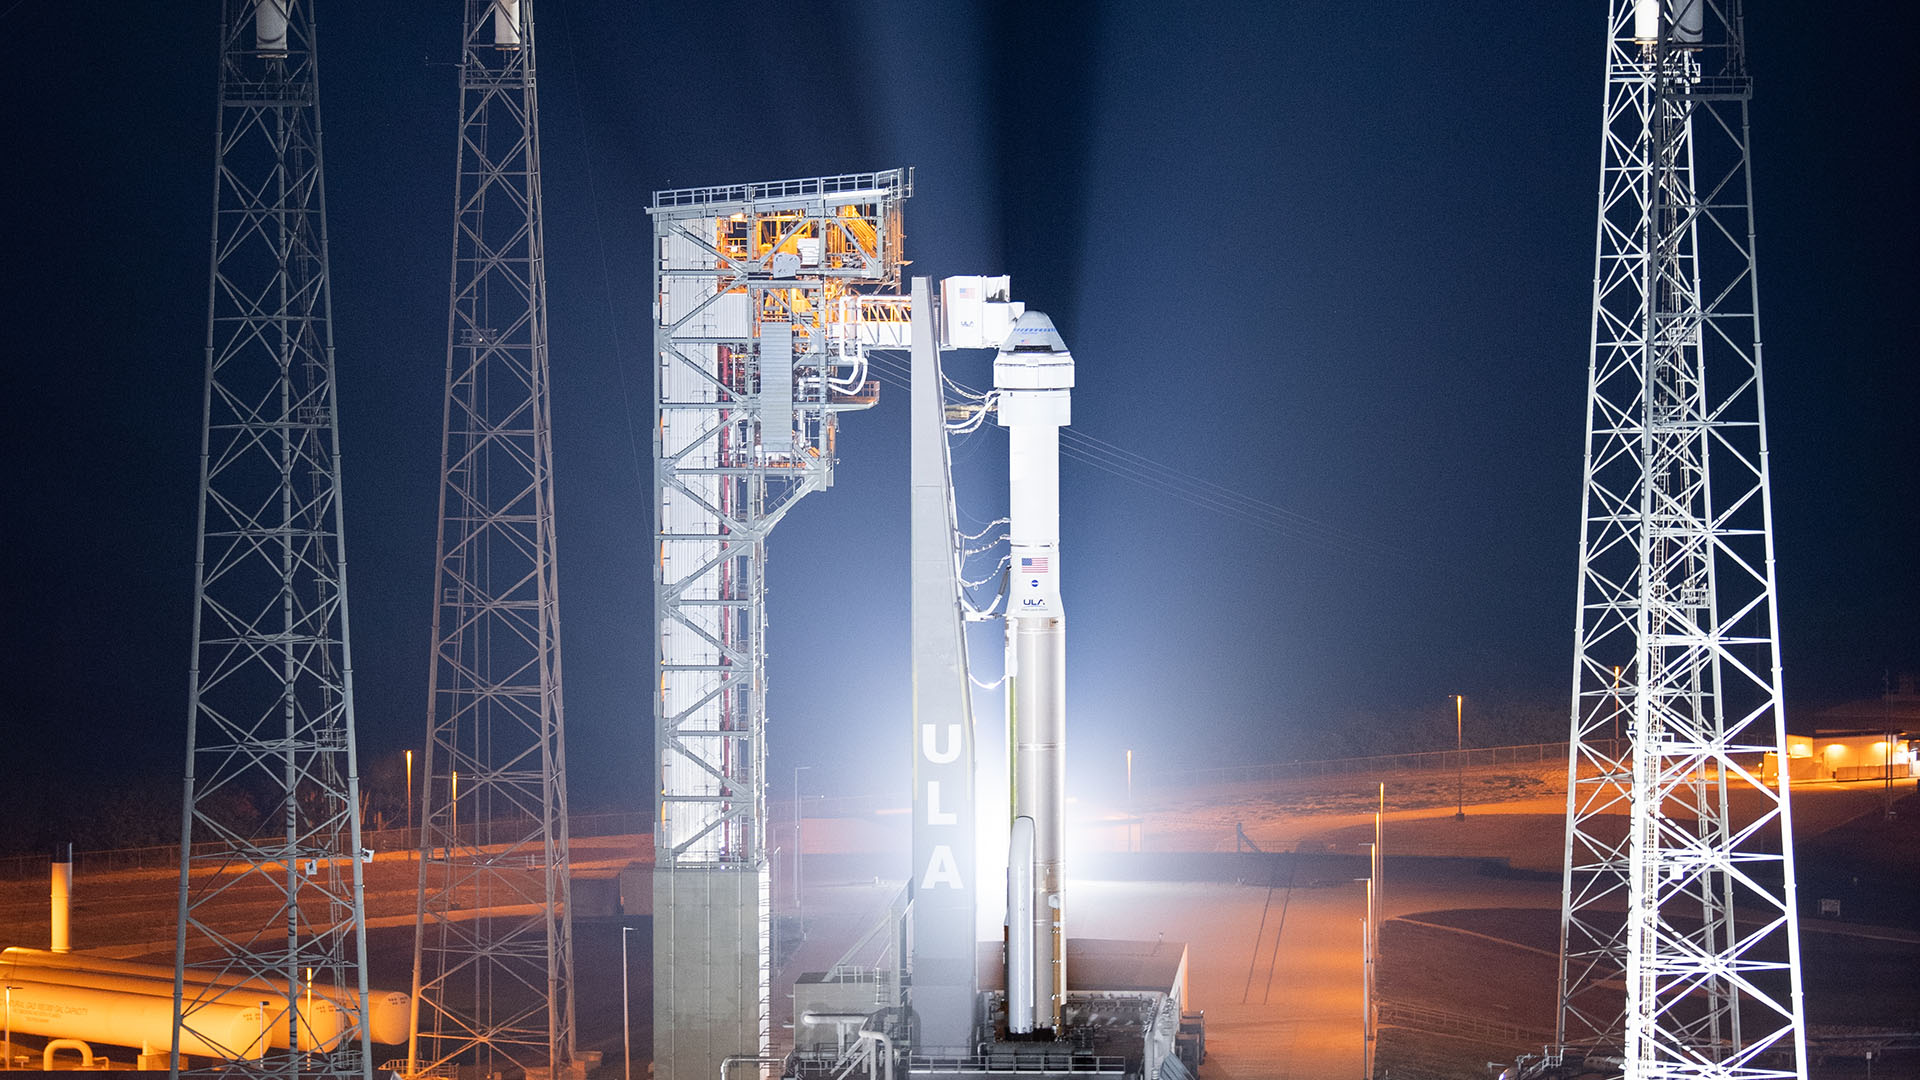 Vol décisif du Starliner vers l’ISS : ce qui doit se passer minute par minute - Numerama